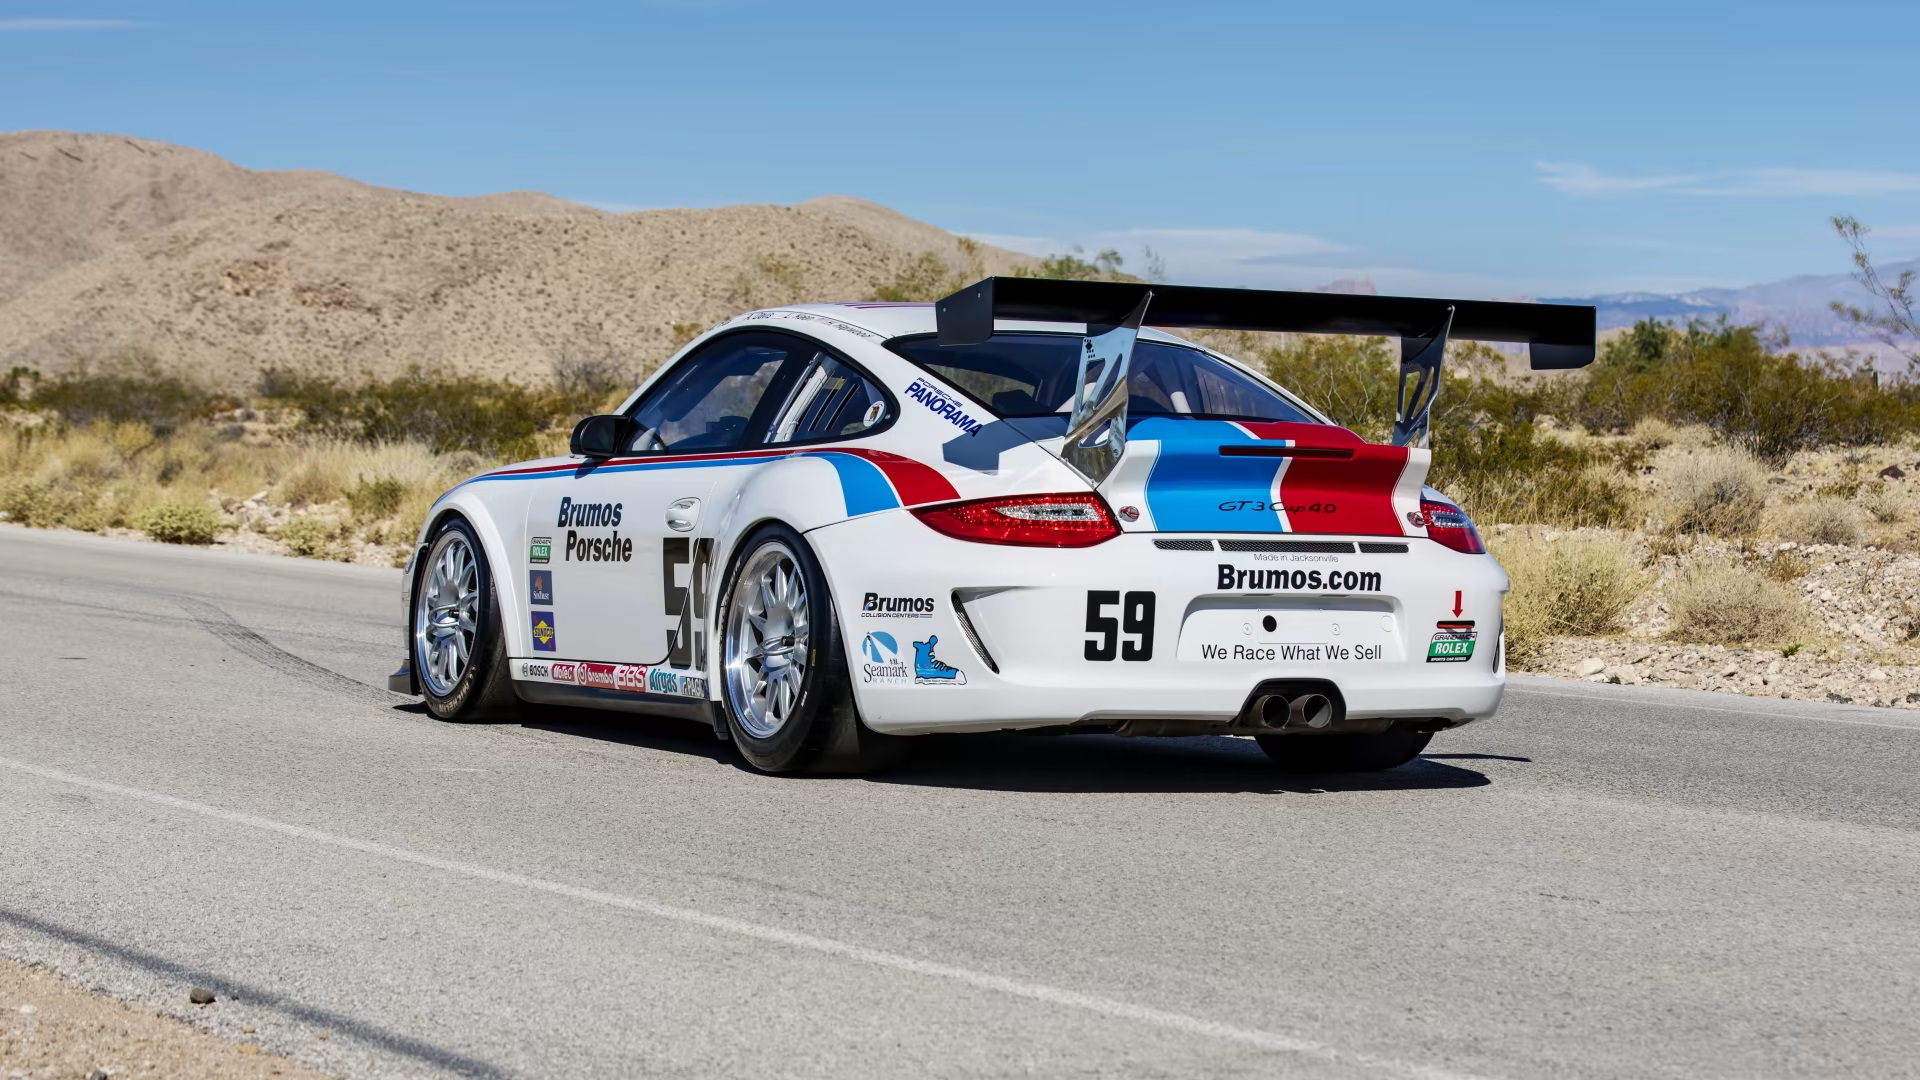 2012 Porsche 911 GT3 Cup 4.0 Brumos Edition